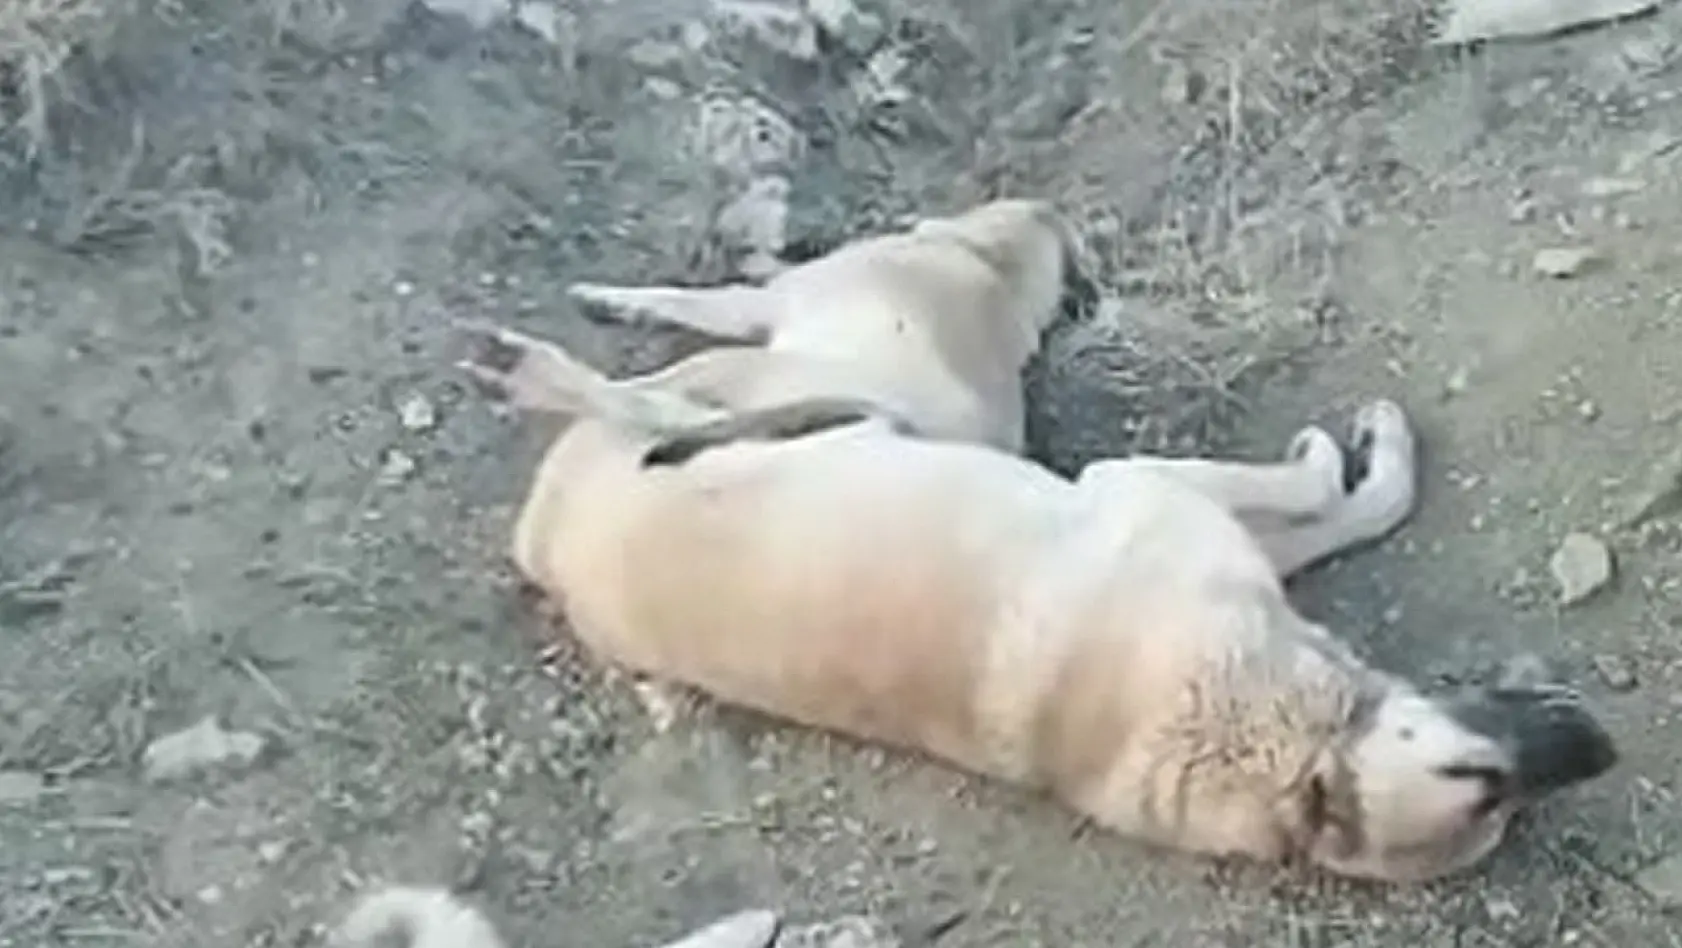 Elazığ'da zehirlenerek öldürülen köpekler için soruşturma başlatıldı